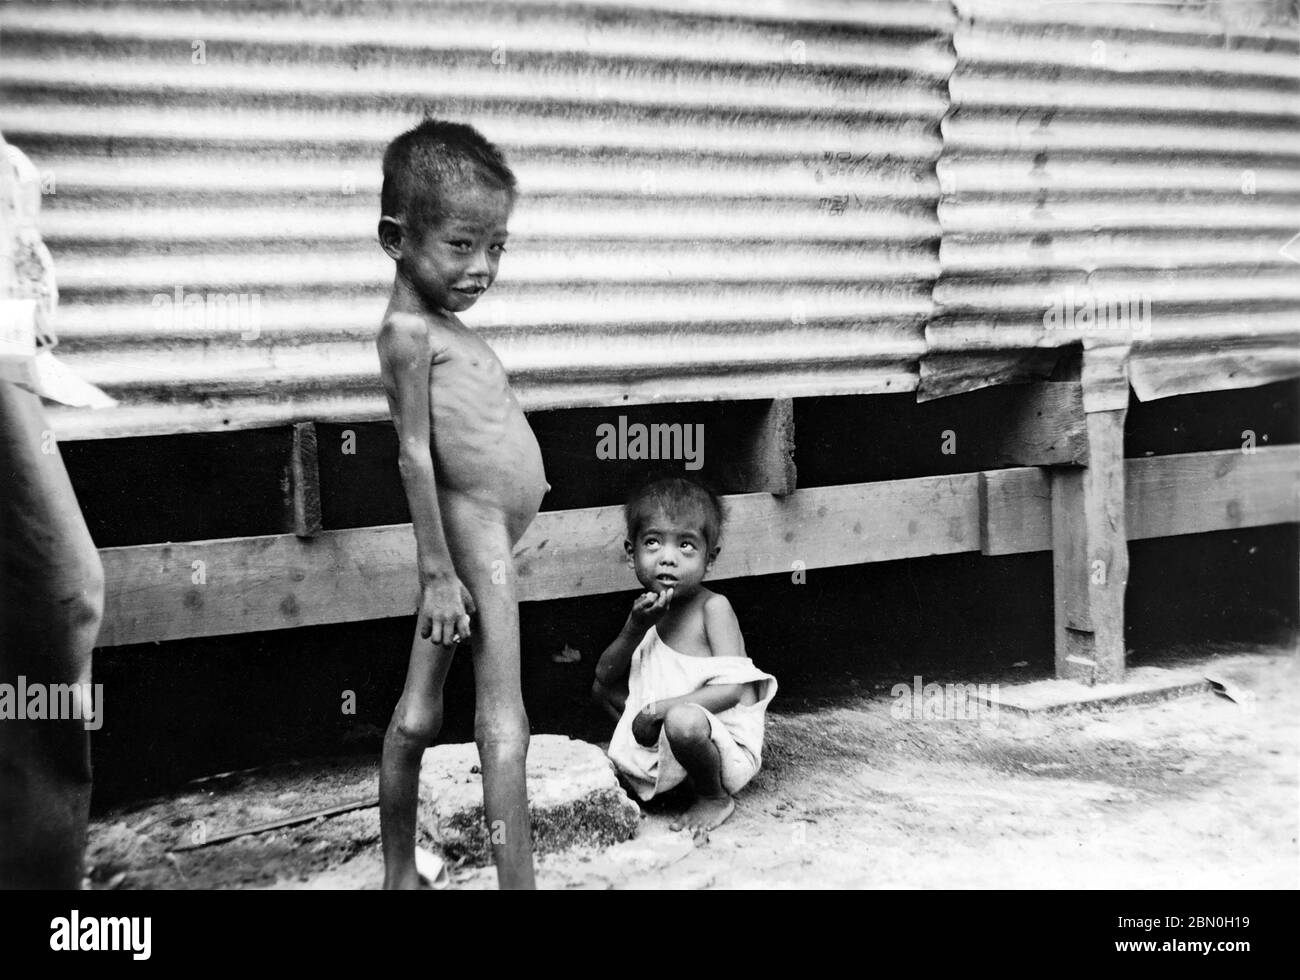 [ 1945 Japon - camp d'internement de la Seconde Guerre mondiale, Saipan ] — un garçon sous-nourri au camp d'internement de Susupe de la Seconde Guerre mondiale (ススッペキャンプ) à Saipan, ca. 1945 (Showa 20). Le camp a été ouvert en 1944 (Showa 19) pour accueillir 13.000 civils japonais et 5.000 Chamorros, Kakanas et Coréens. Il a été fermé le 4 juillet 1946 (Showa 21). La capture américaine des Mariannes du Nord en juillet 1944 a entraîné la première occupation américaine du territoire japonais. imprimé gélatine argent du xxe siècle. Banque D'Images